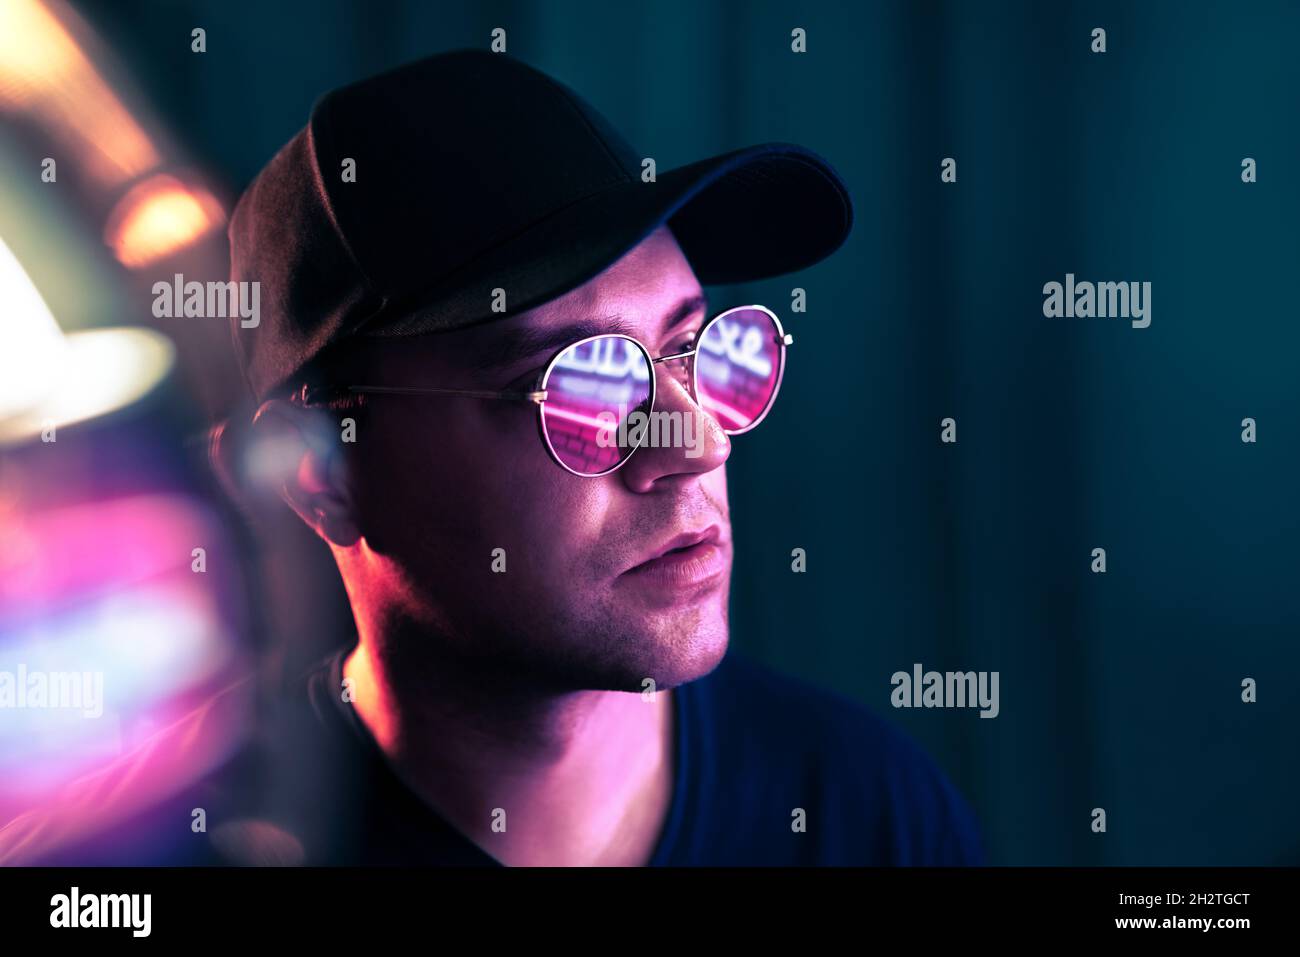 Futuristic neon technology. Man with glasses in future cyberpunk illumination. Purple fluorescent color on face. Studio portrait. Techno rave party. Stock Photo